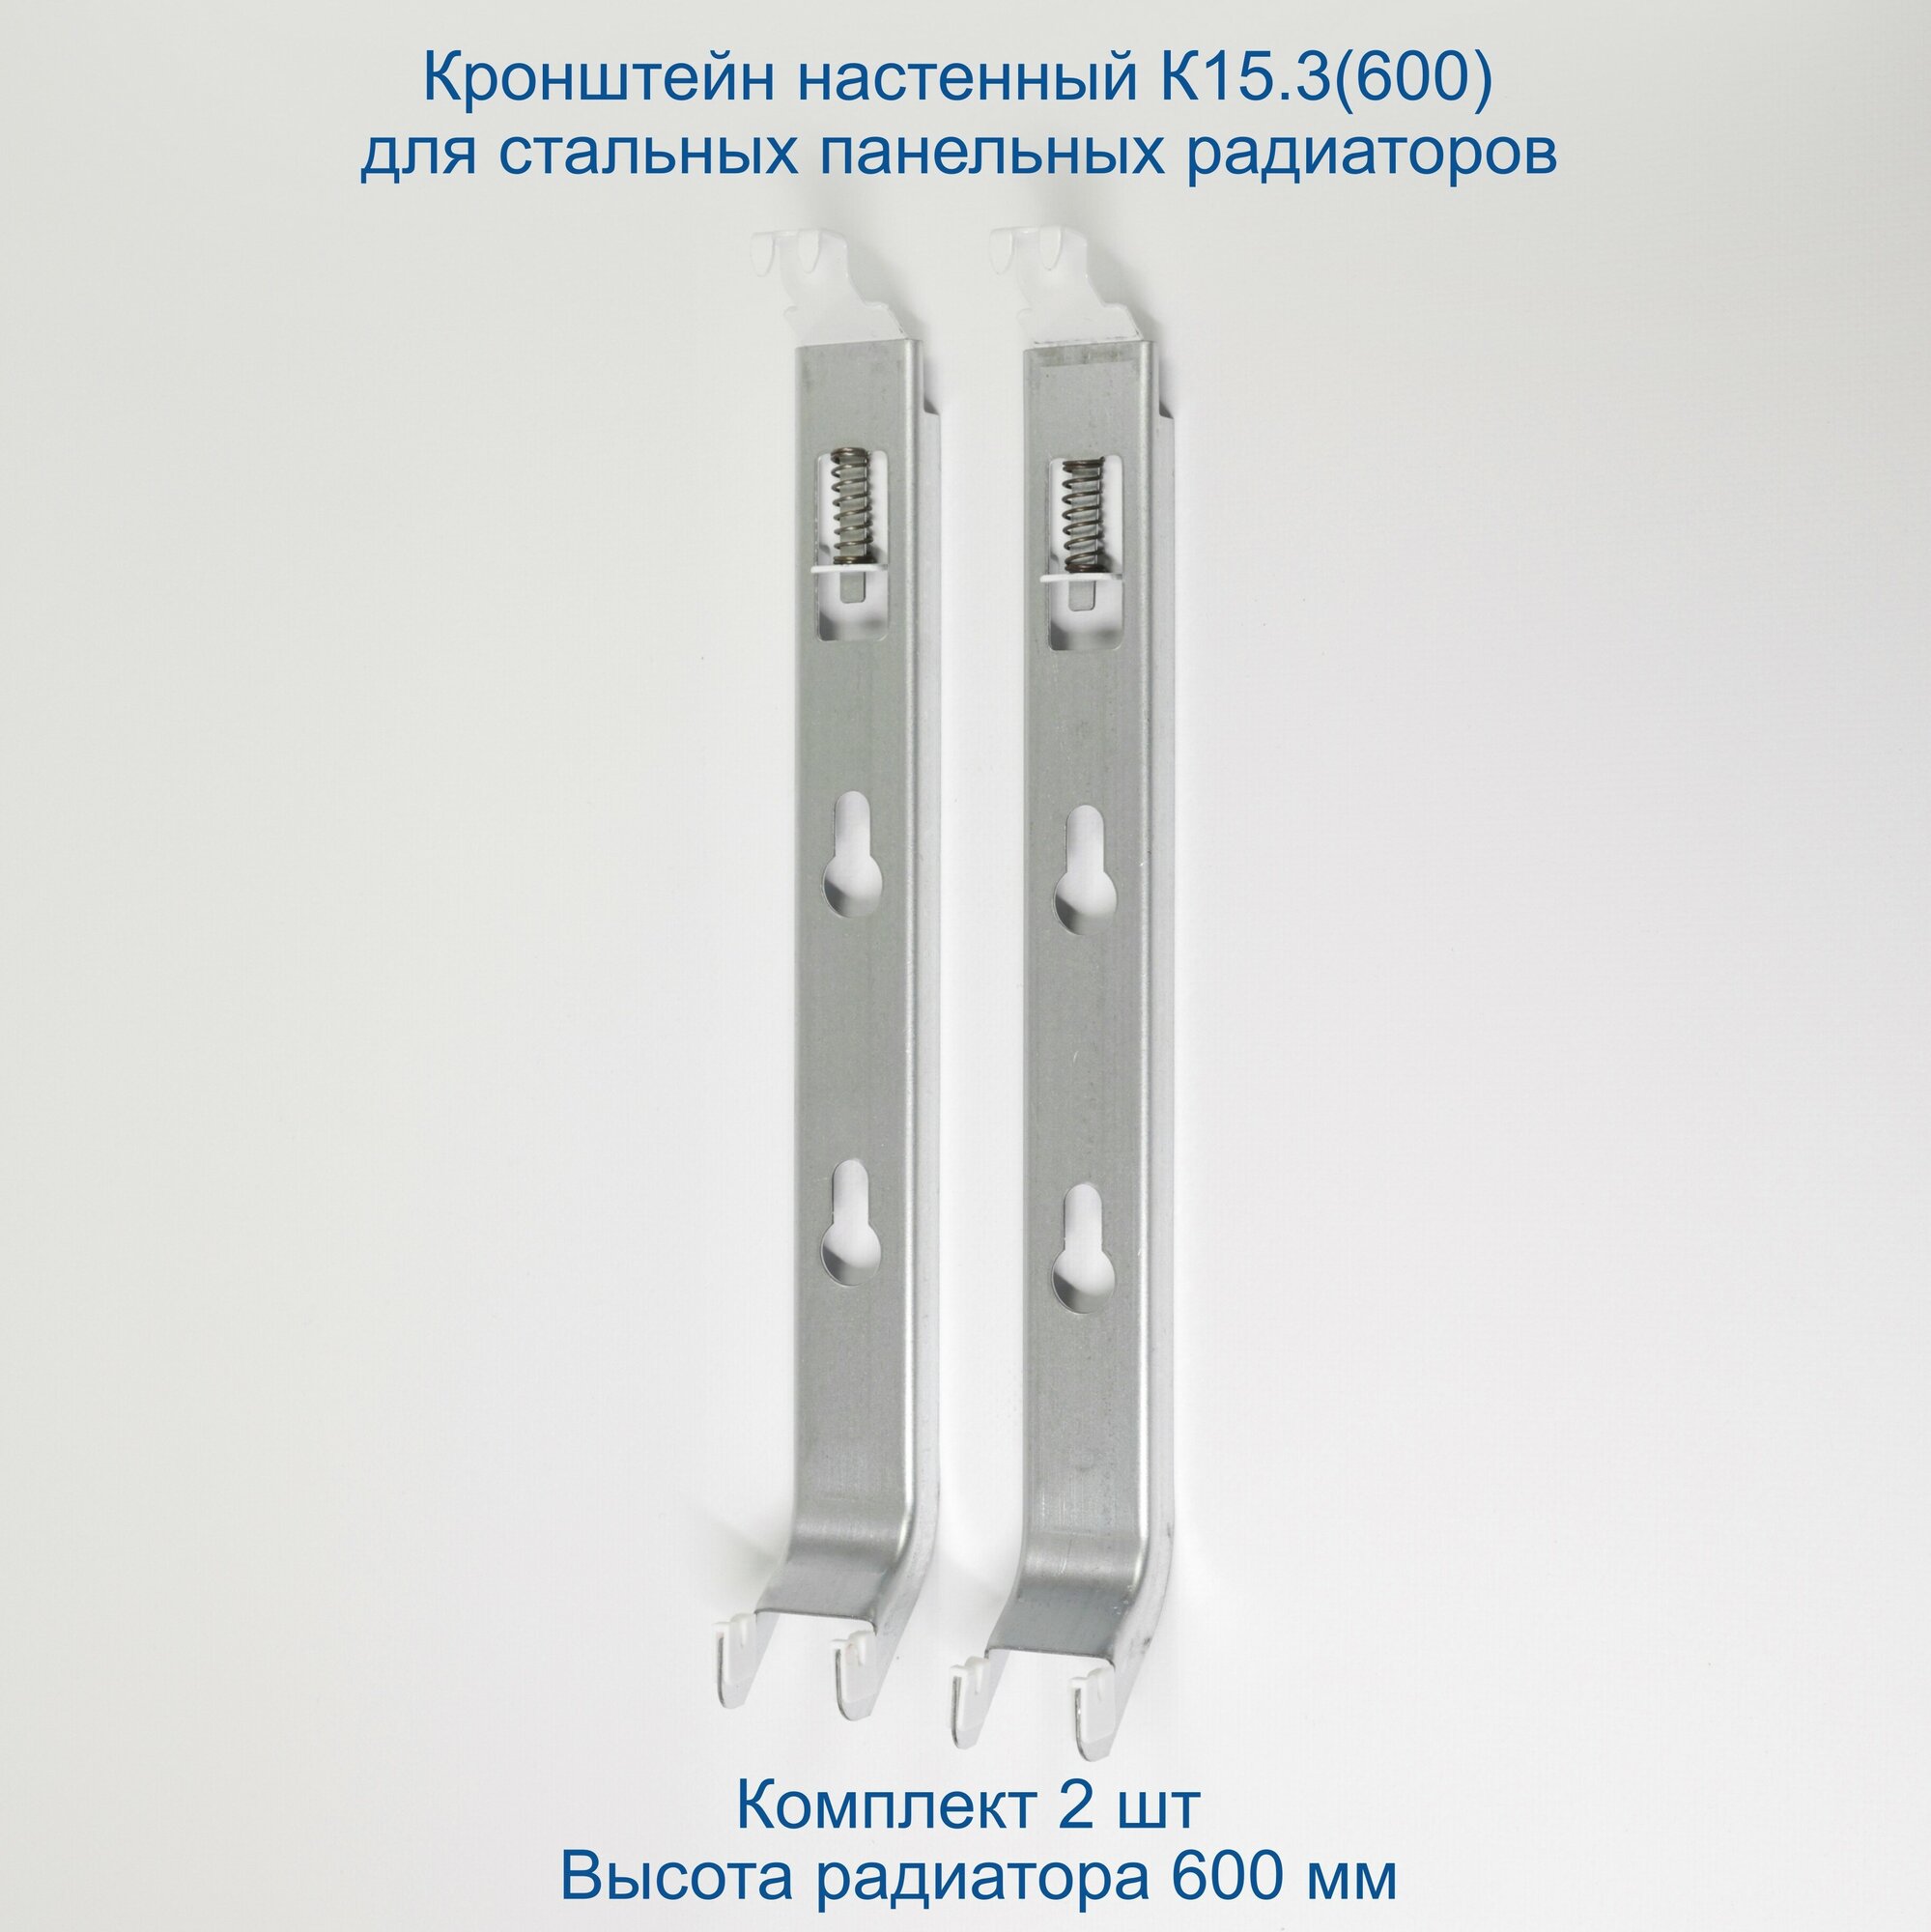 Кронштейн настенный Кайрос К15.3 (600) для стальных панельных радиаторов высотой 600 мм (комплект 2 шт)